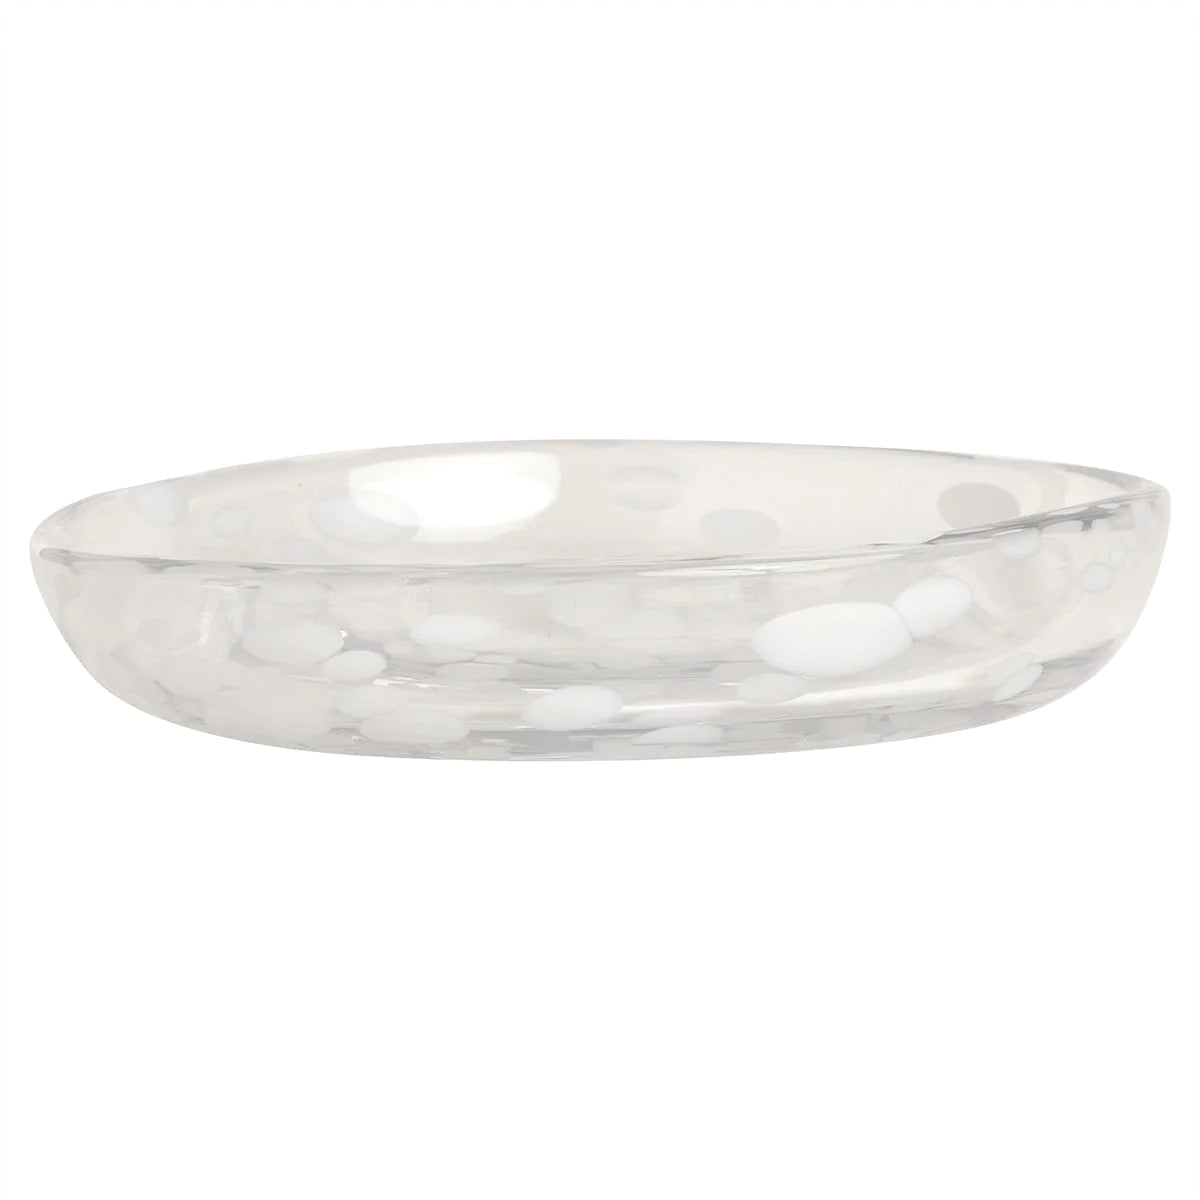 Jali Glass Dessert Plate in White - OYOY Living Design